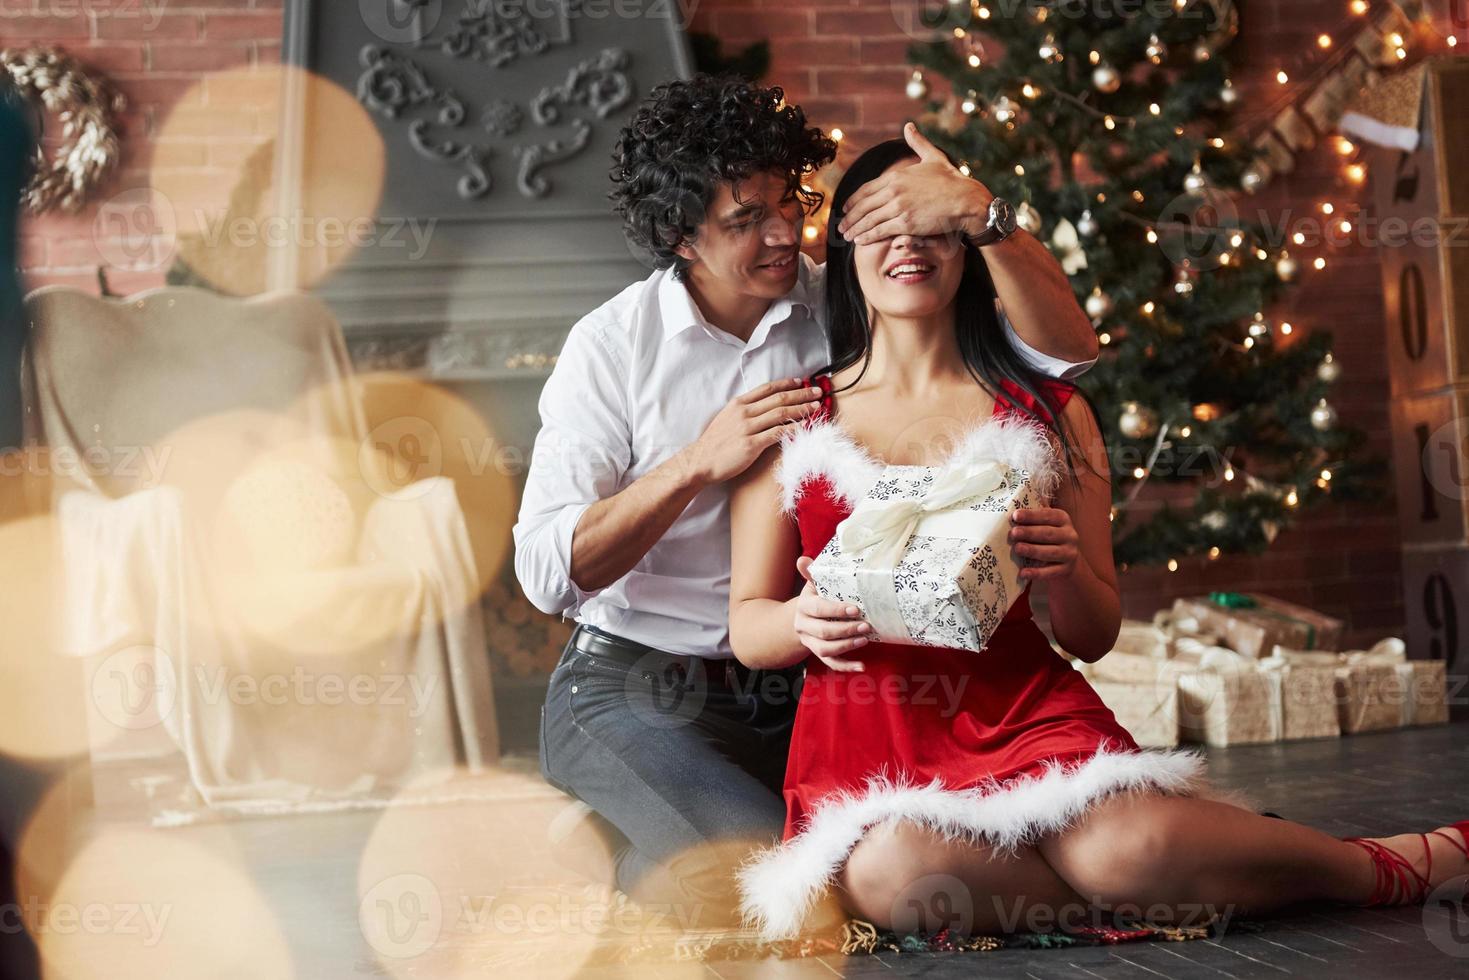 wunderschöner Moment. Mann macht Überraschung für seine Freundin. gibt Neujahrsgeschenk. junges Paar sitzt auf dem Boden des Zimmers des urlaubsgeschmückten Zimmers foto